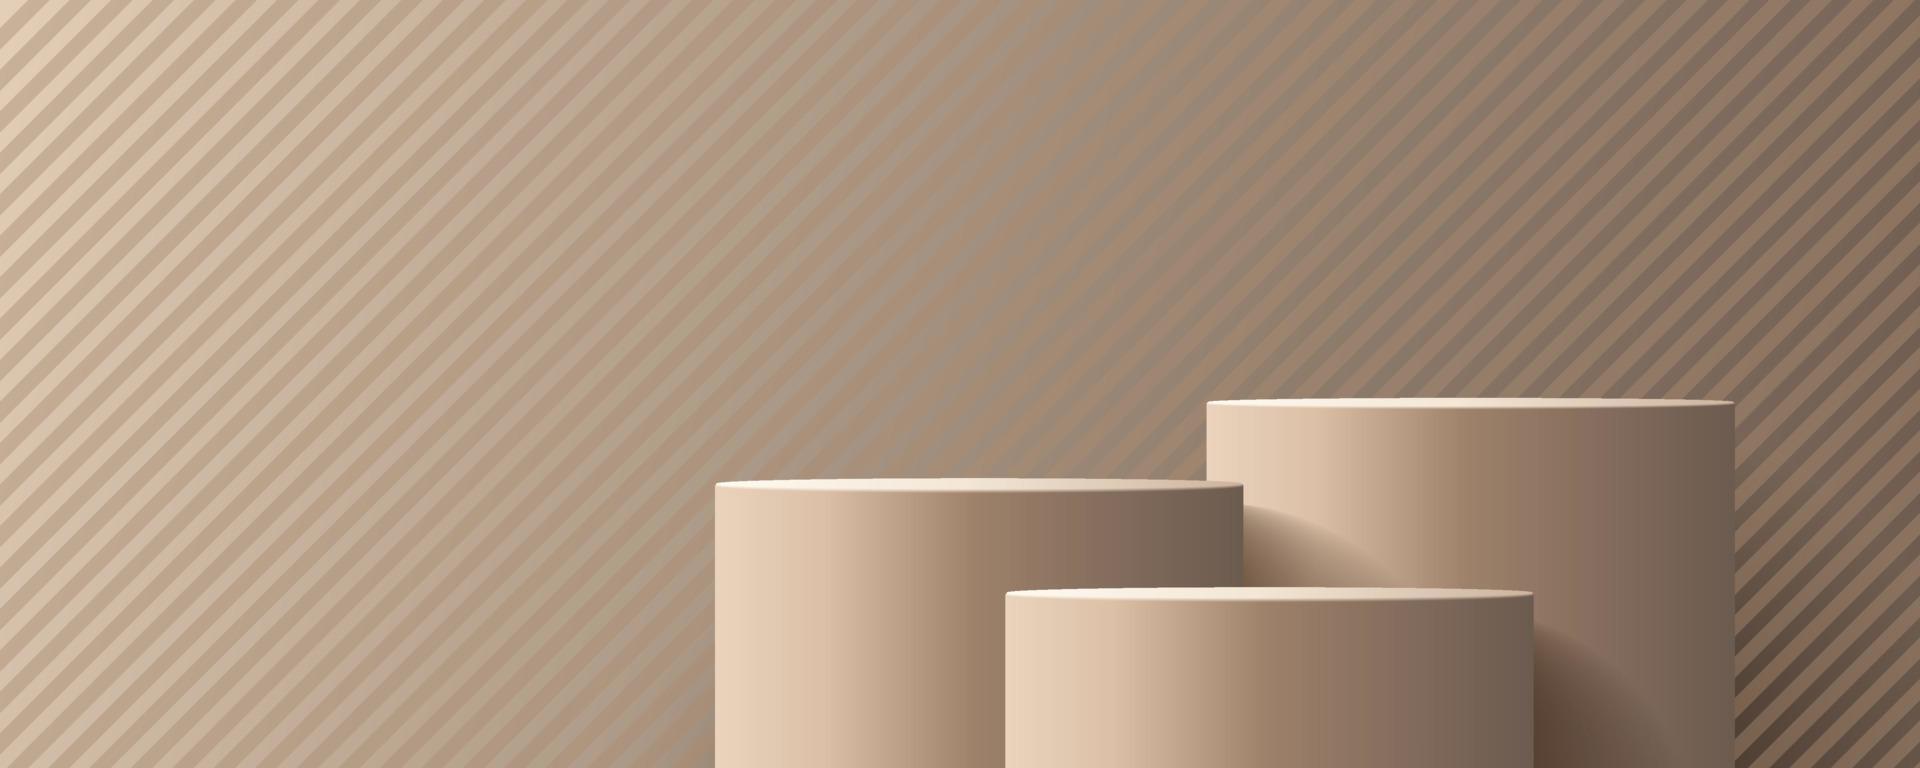 productpodiummodel met abstracte achtergrond op beige en witte achtergrond, vector 3d illustratie